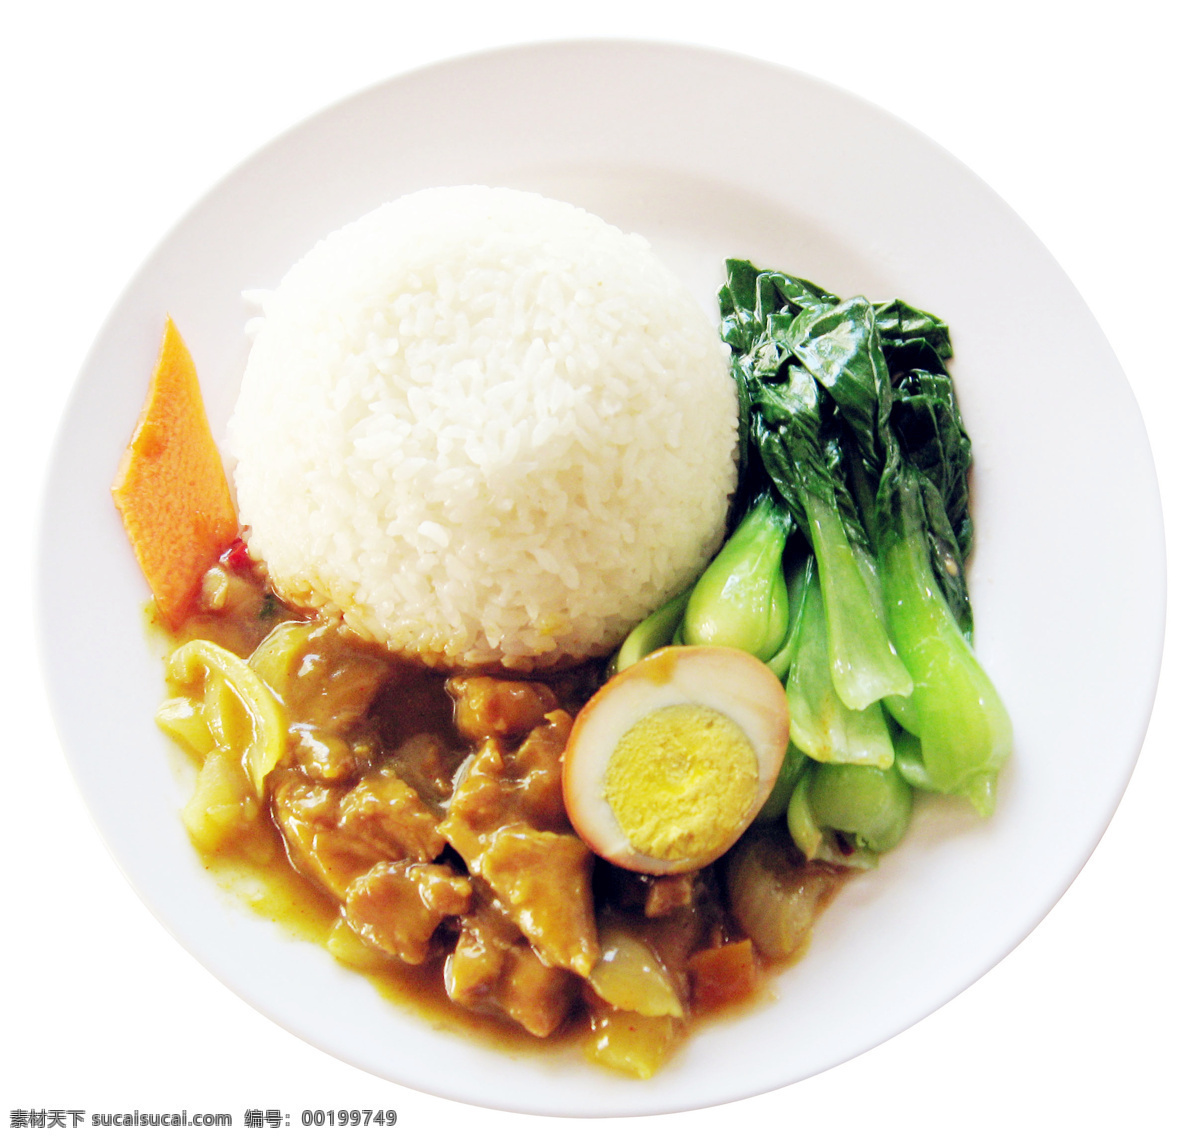 日式咖喱饭 唯美 食物 食品 美食 美味 营养 健康 日式 日本料理 咖喱 咖喱饭 餐饮美食 西餐美食